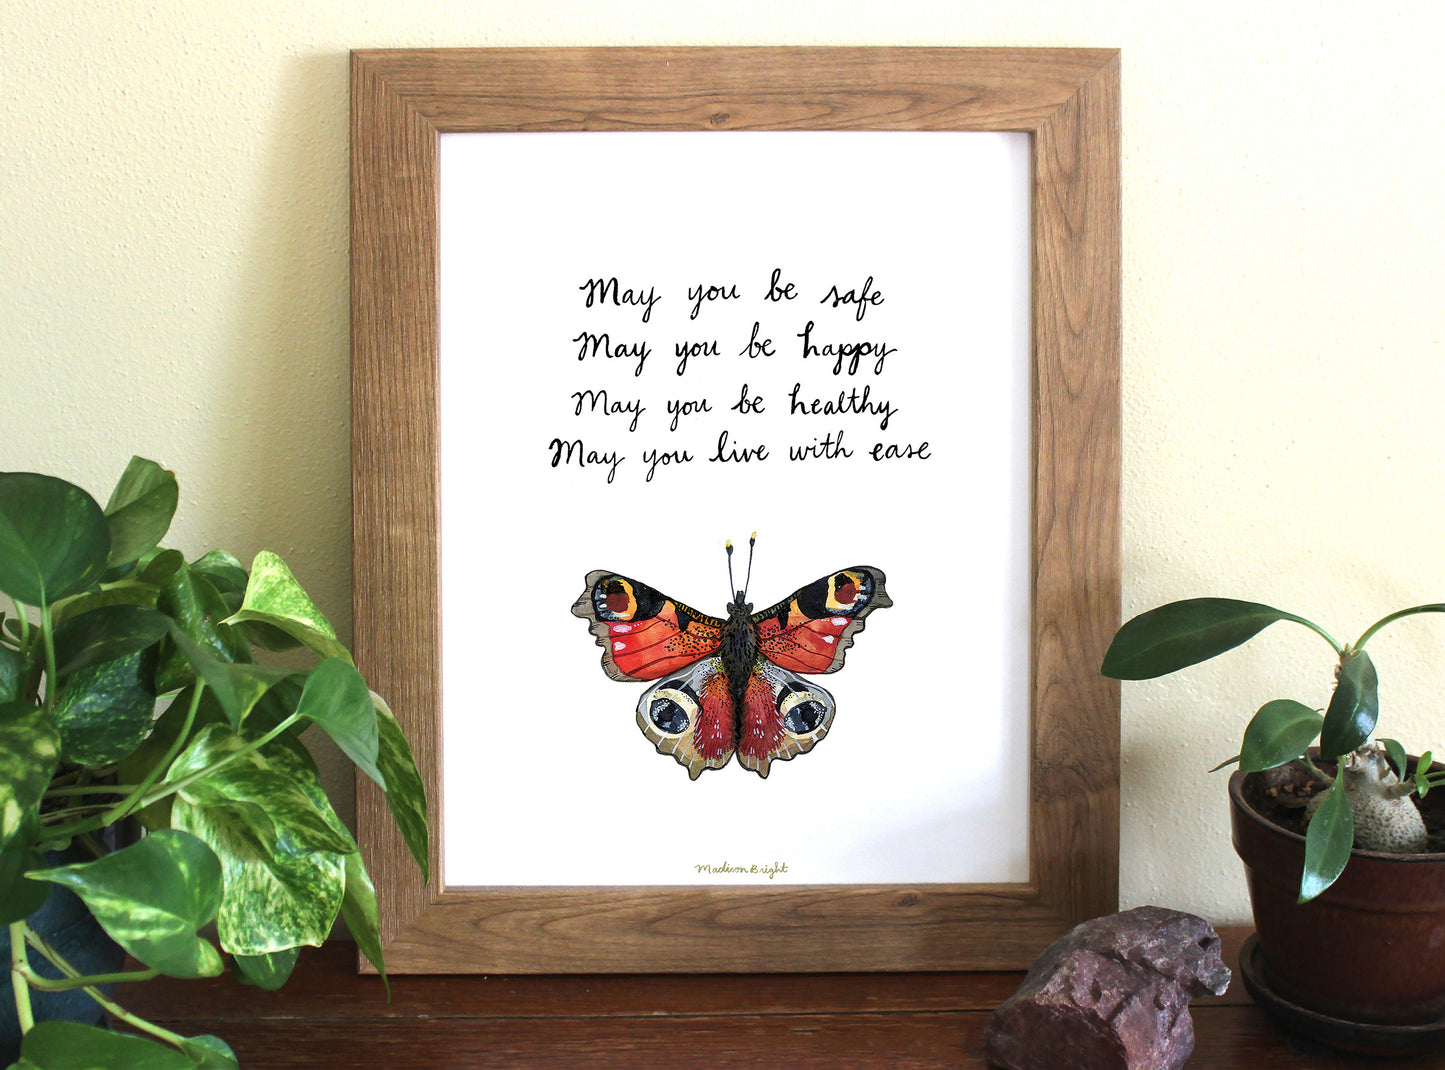 Lovingkindness Peacock Butterfly - Art Print